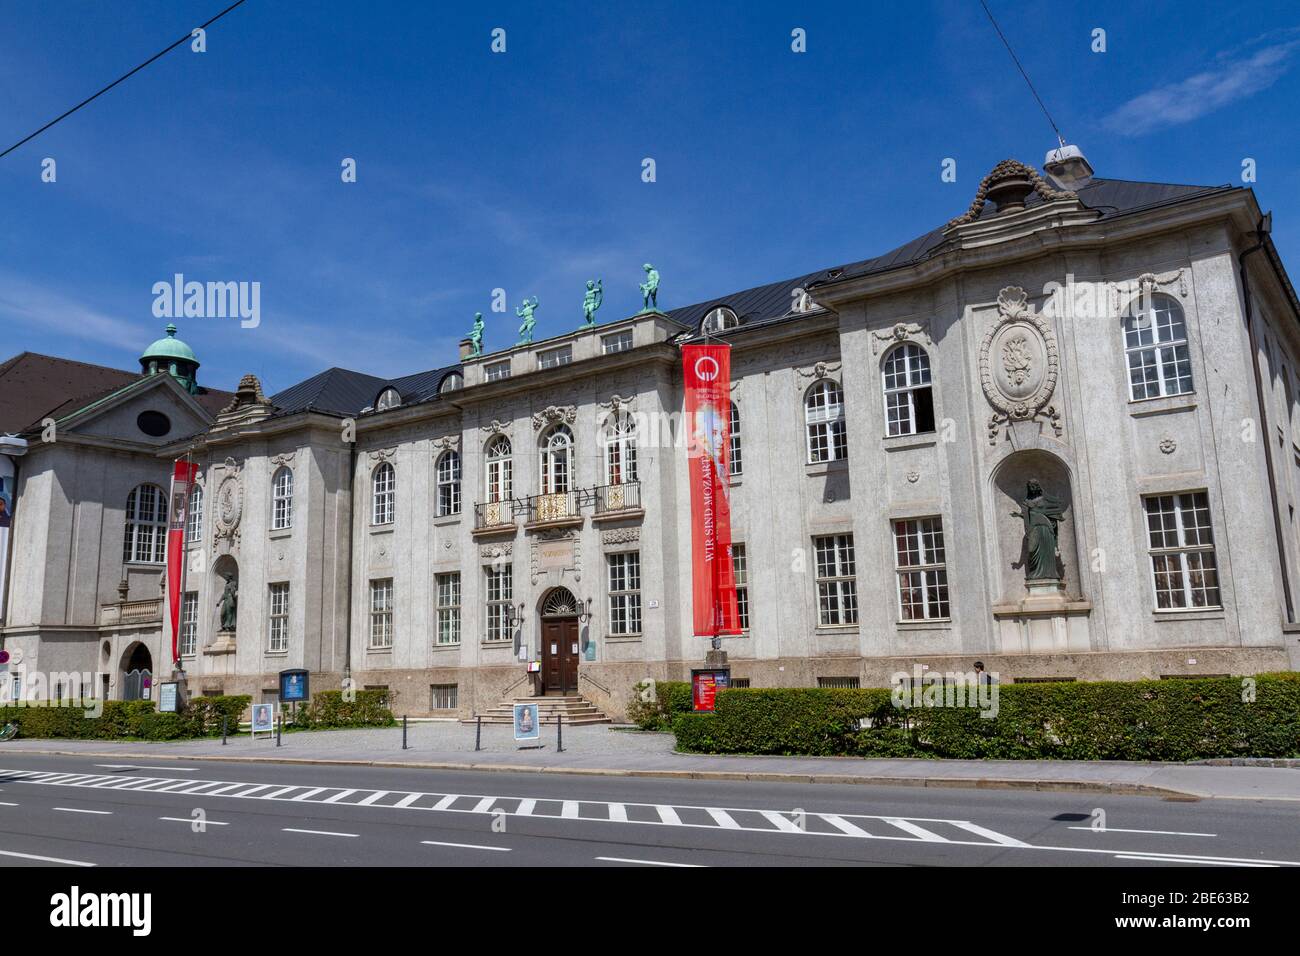 The Internationale Stiftung Mozarteum (International Mozarteum Foundation) in Salzburg, Austria. Stock Photo